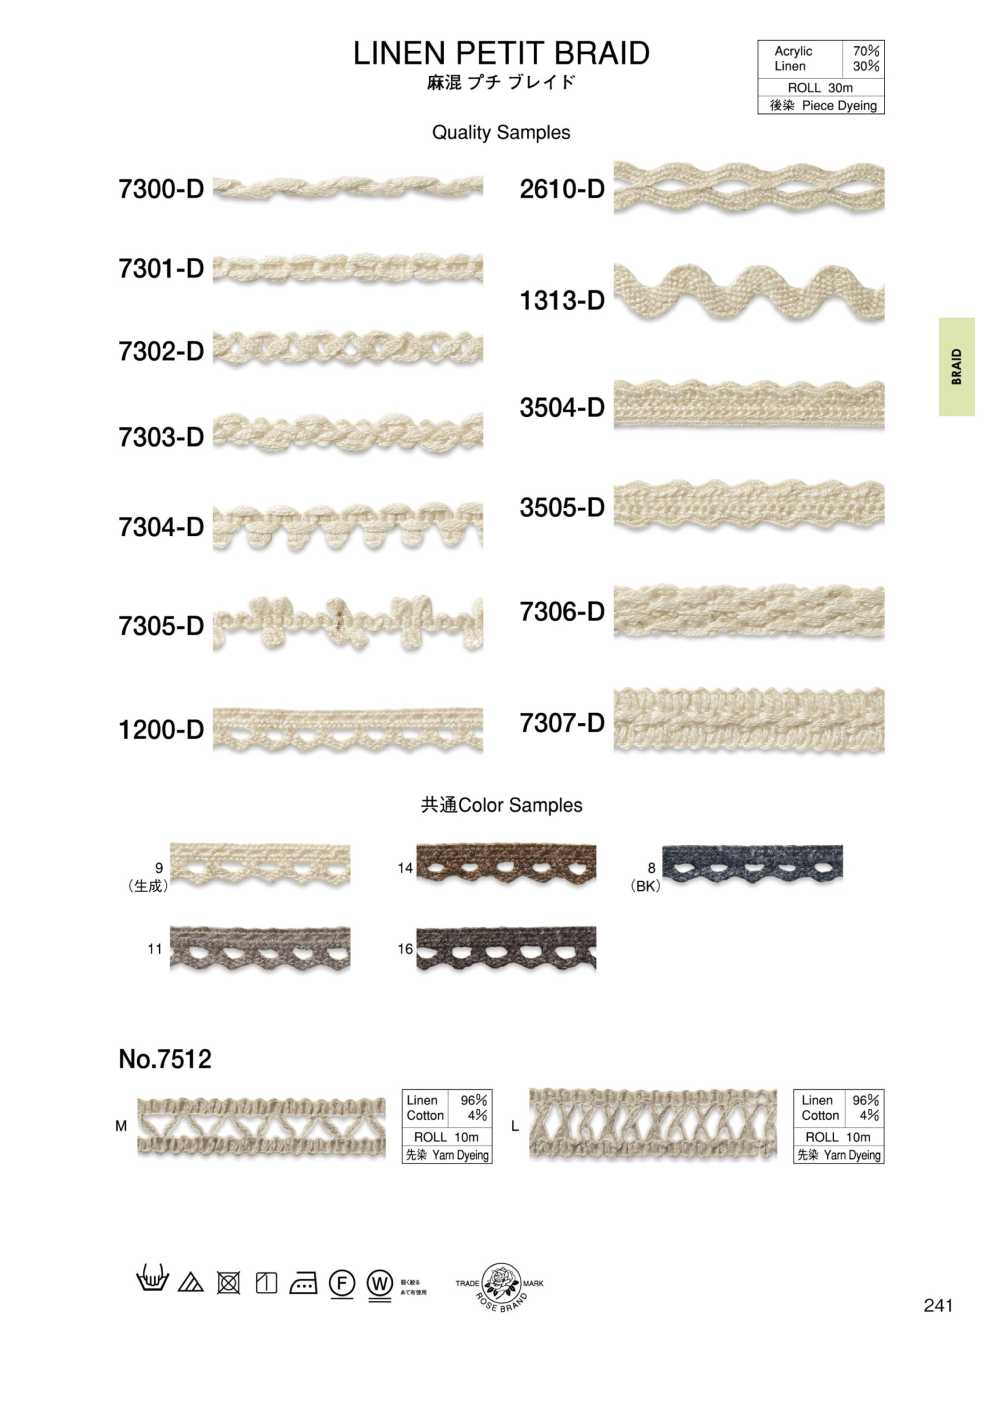 7303-D Linen Blend Petite Braid[Ribbon Tape Cord] ROSE BRAND (Marushin)